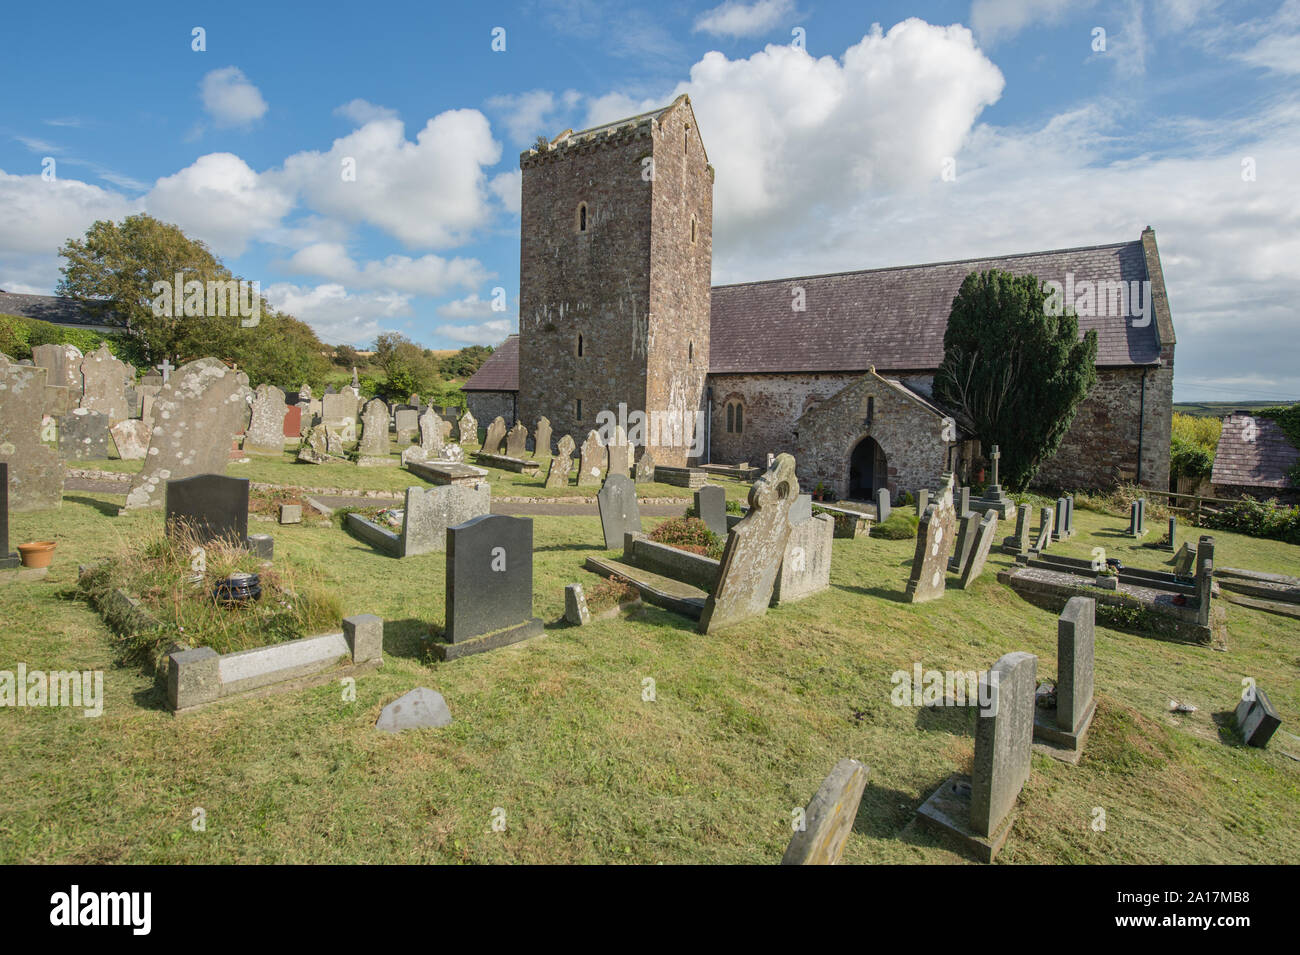 St Cenydd la Chiesa, Llangennith , una chiesa del XII secolo sul sito di un sesto secolo llan, o il sagrato della chiesa che conserva l'originale impronta circolare. Llangennith, Gower Wales UK Foto Stock